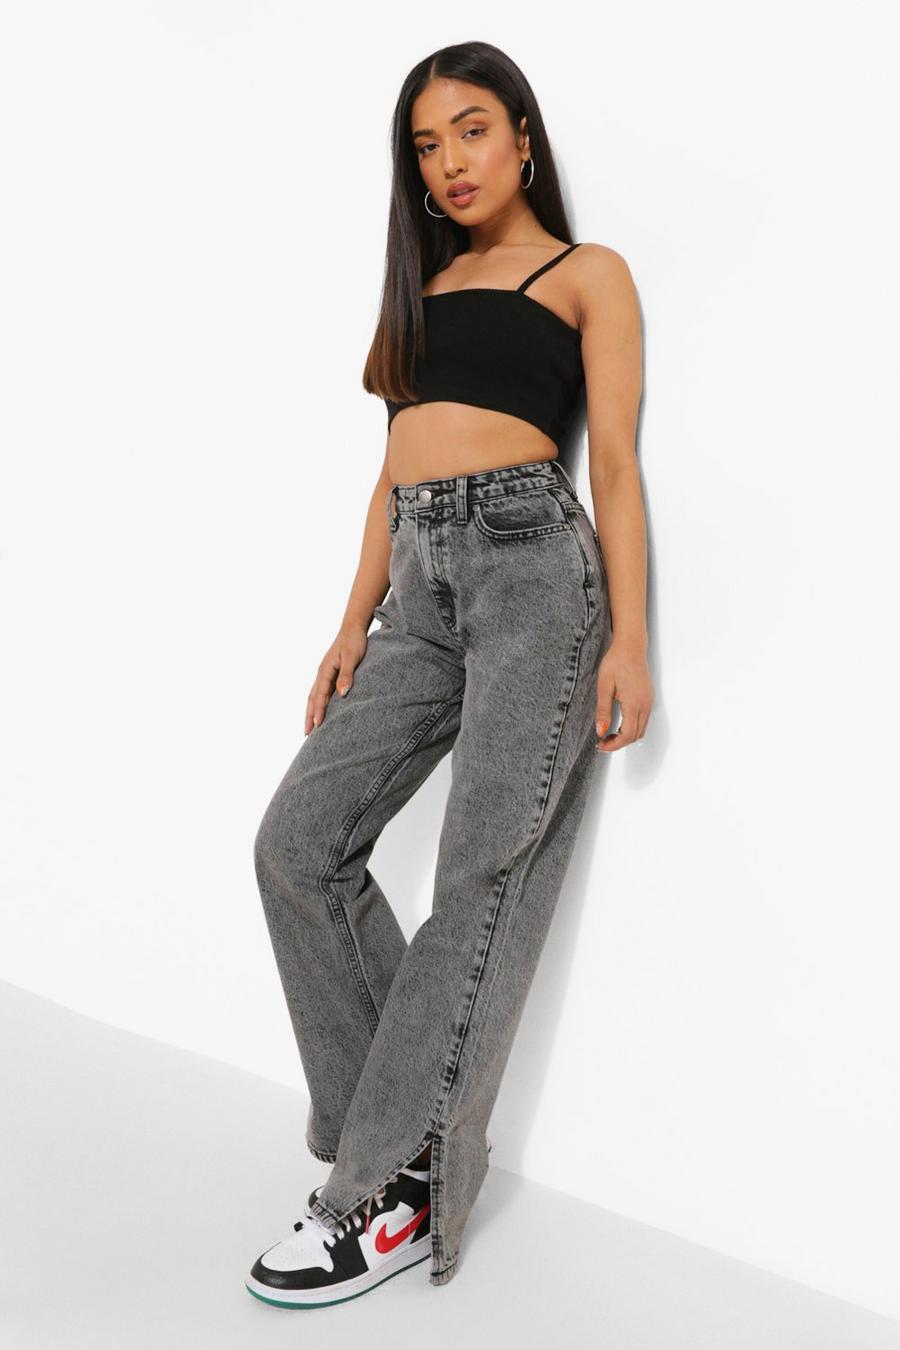 אפור gris ג'ינס בייסיק high waist עם שסע במכפלת, פטיט